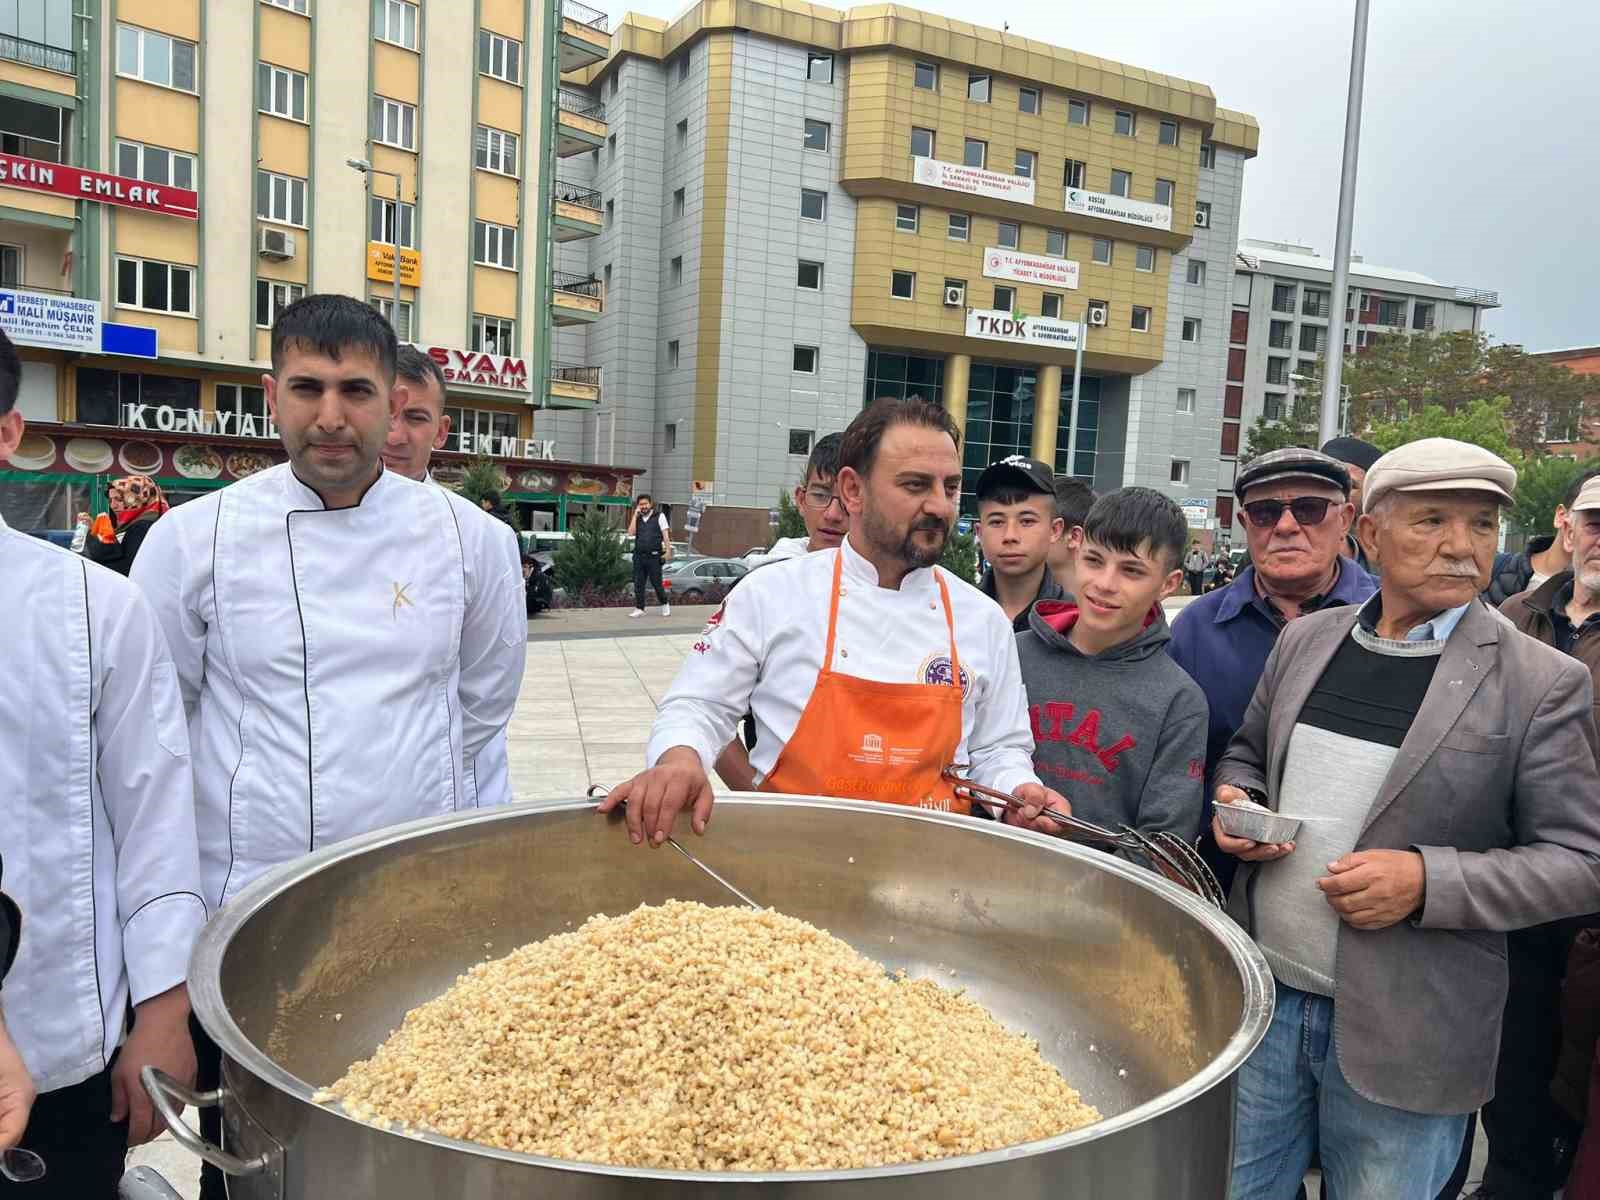 Afyonkarahisar’da Türk Mutfağı Haftası kutlandı